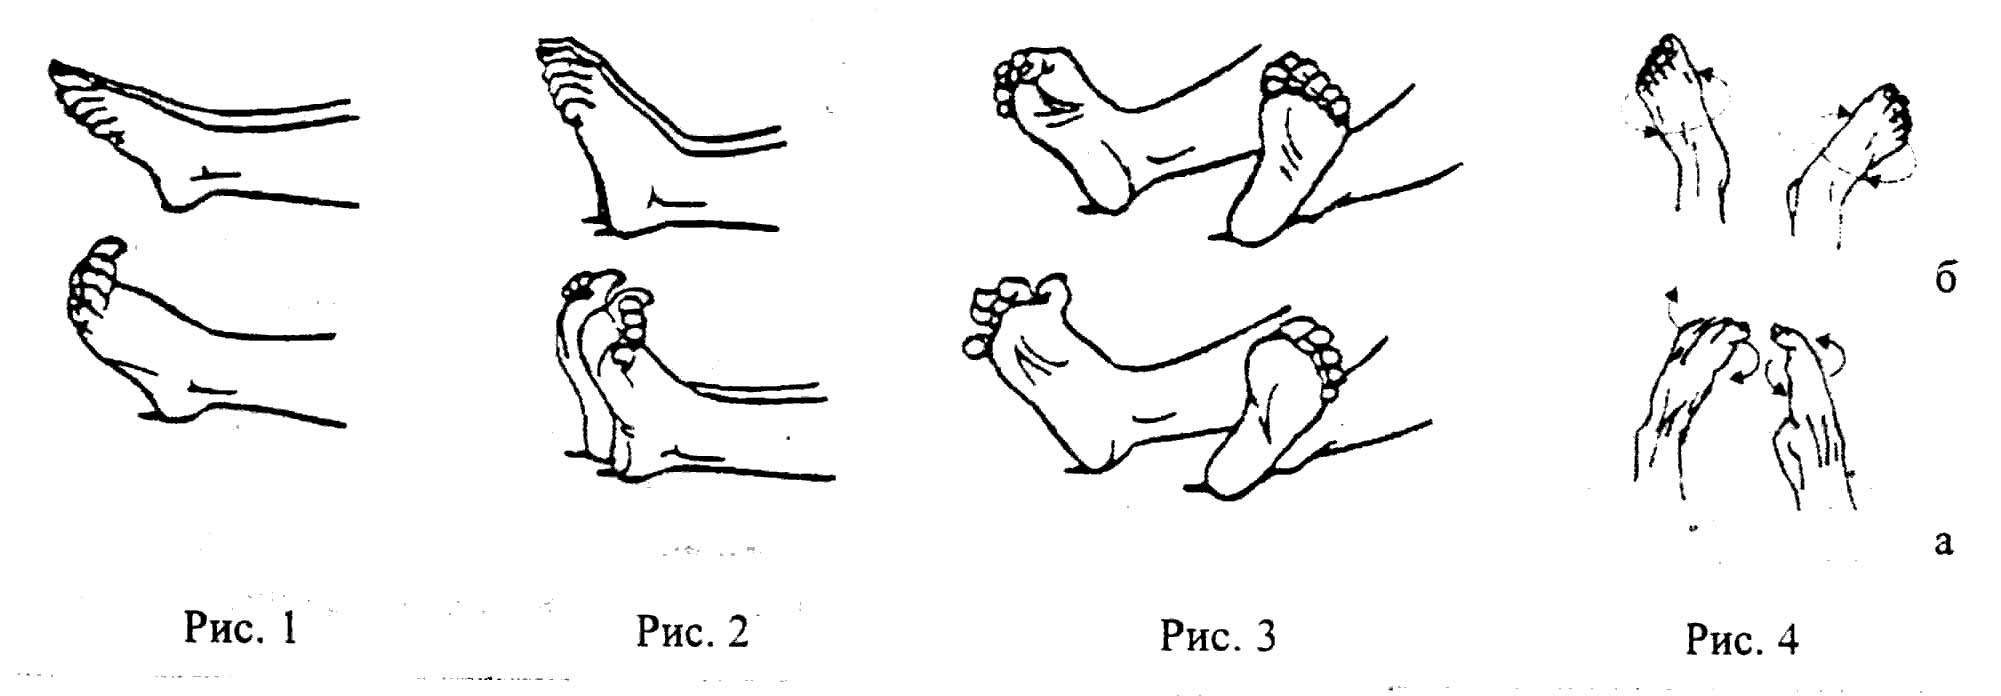 Упражнения для лечения плоскостопия 5 отличных комплексов. Типы плоскостопия